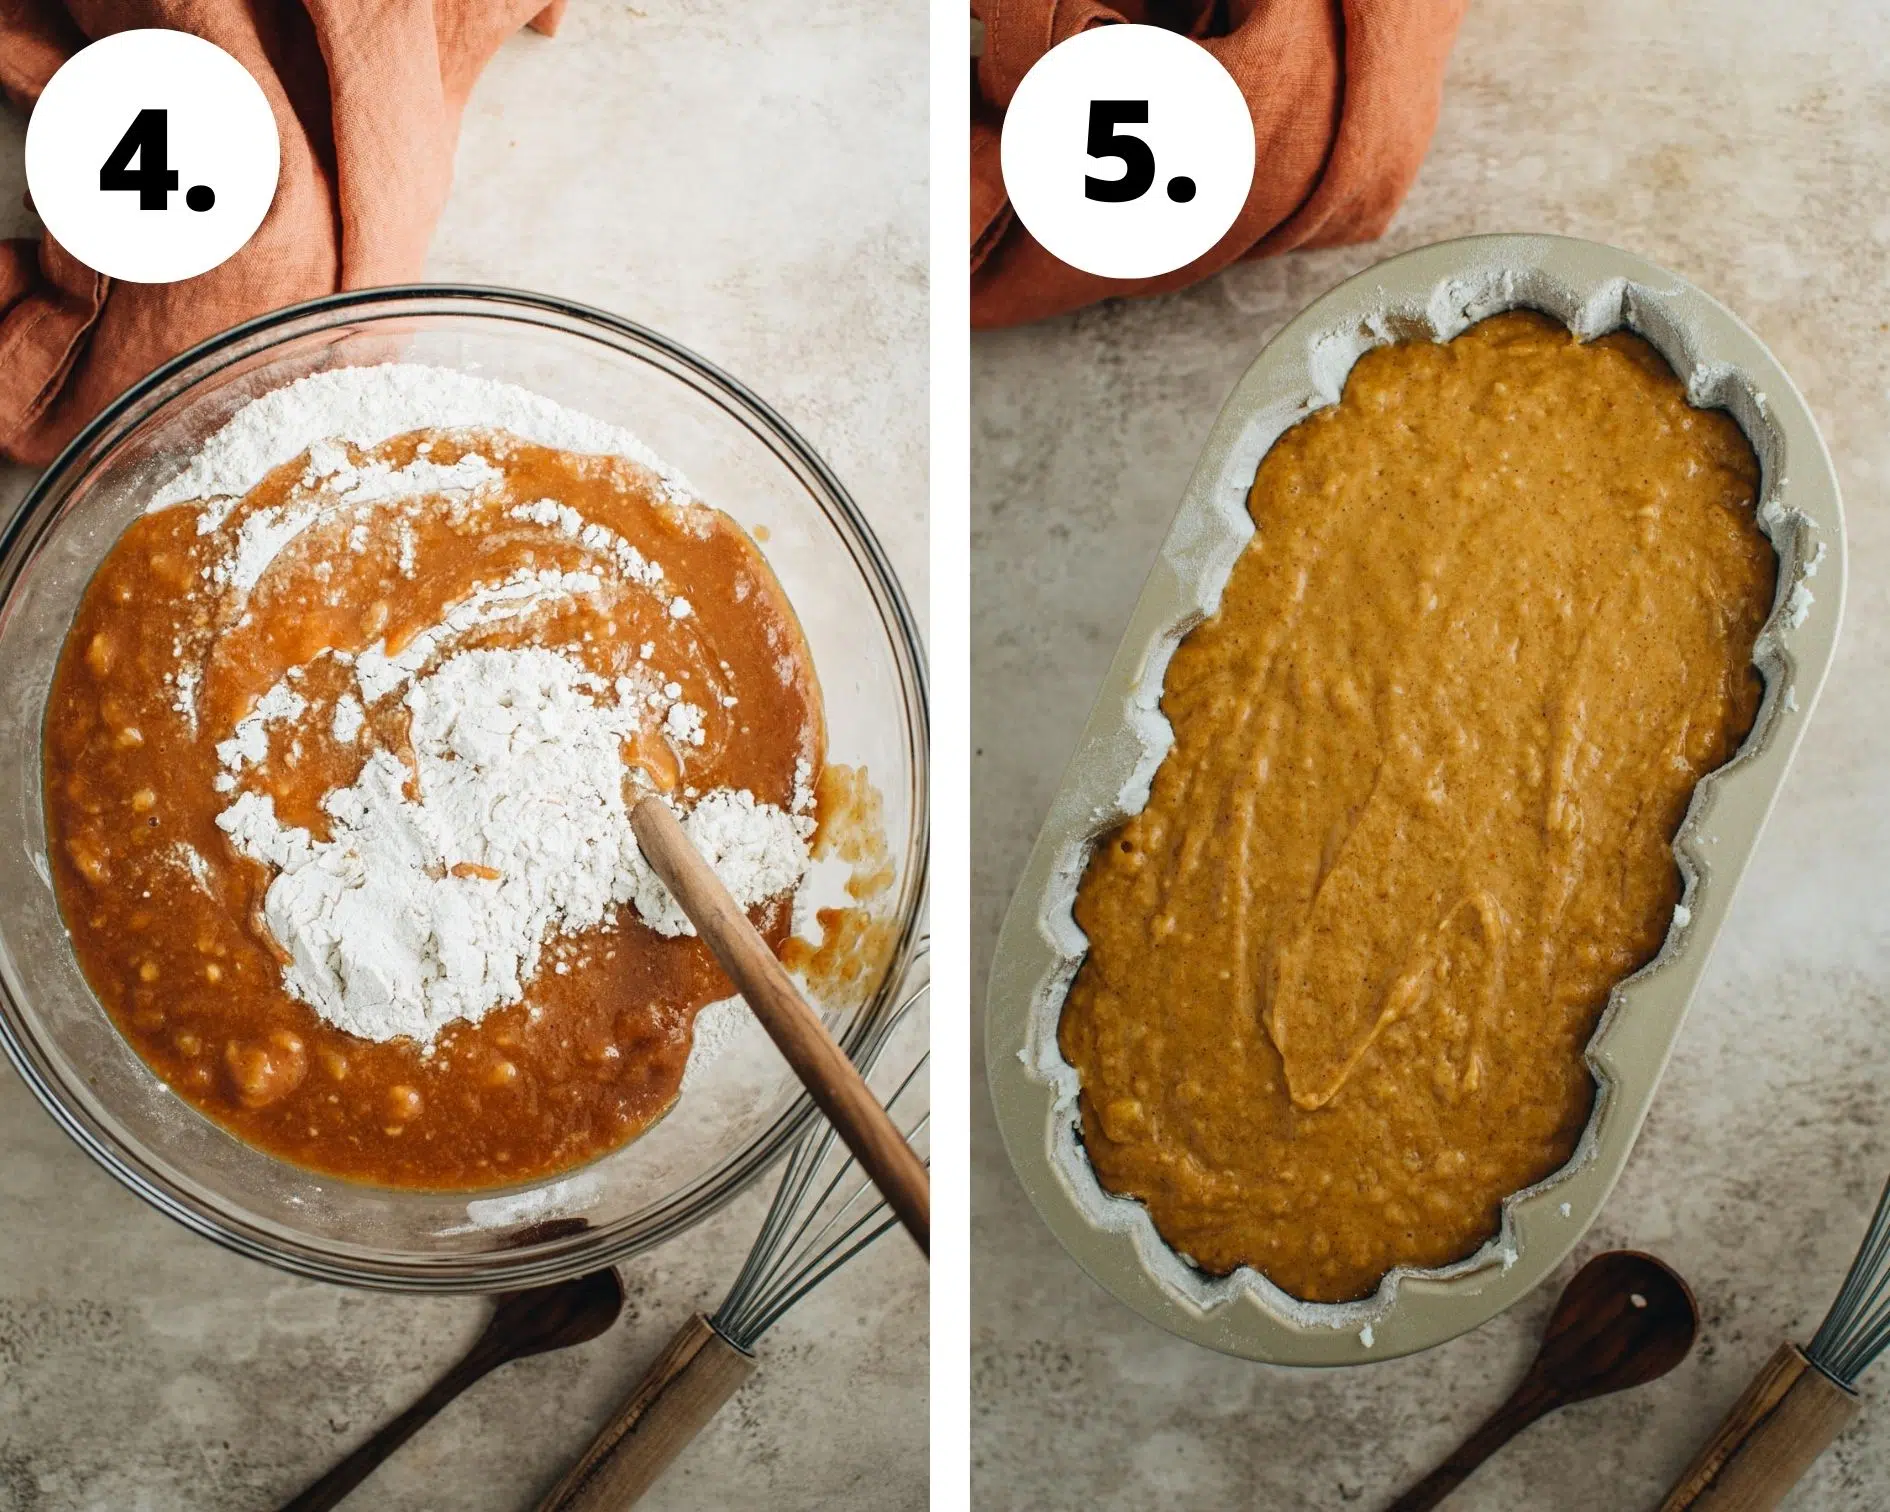 Pumpkin banana bread process steps 4 and 5.